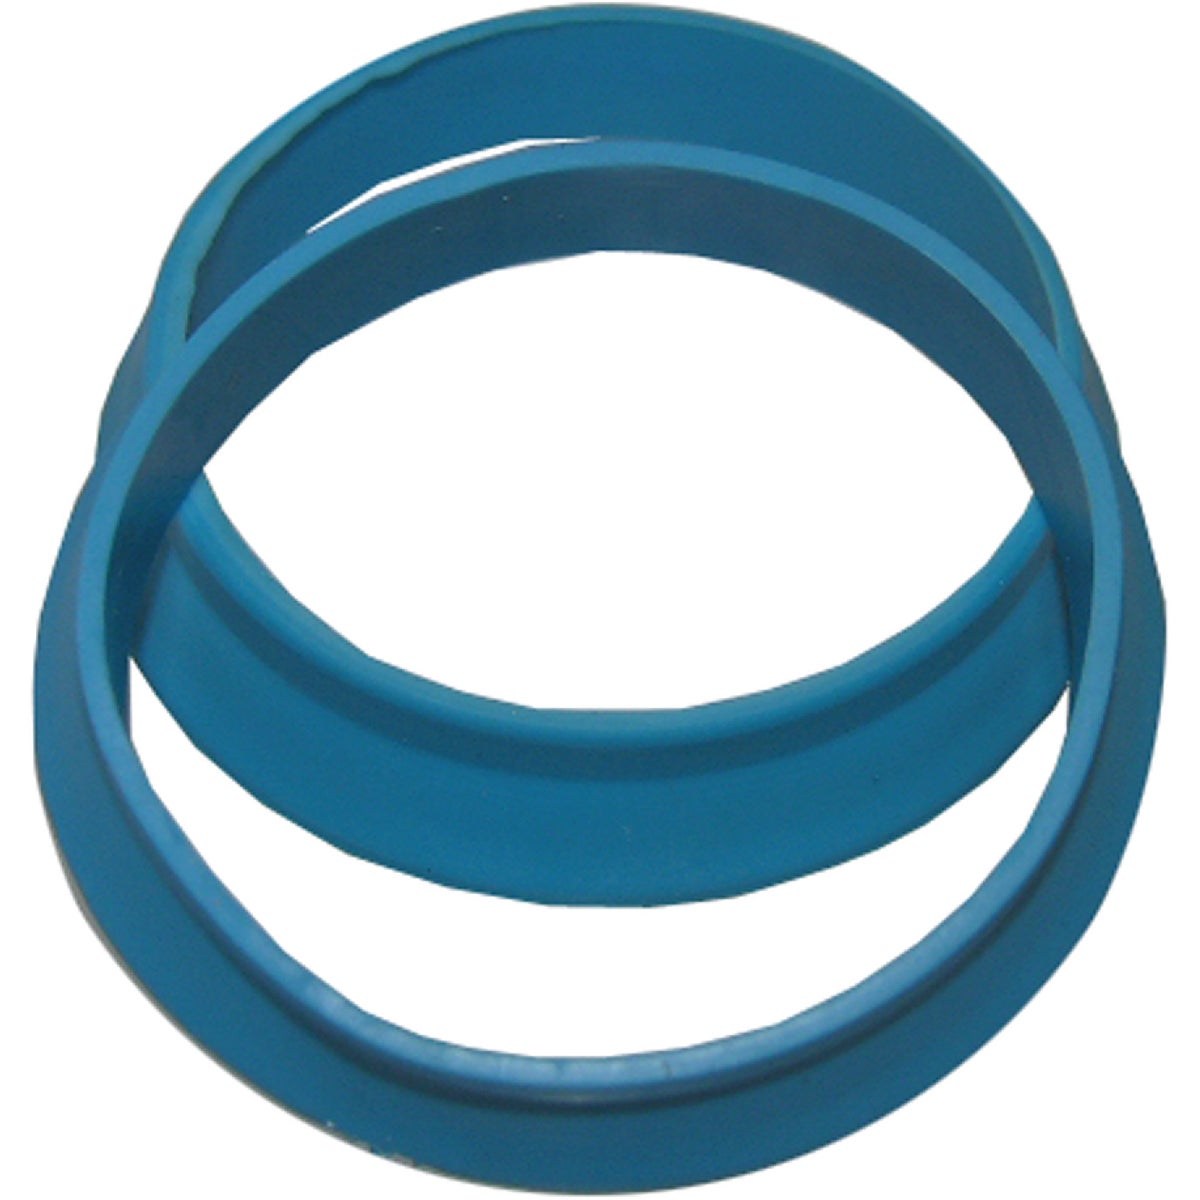 Lasco 1-1/4 In. Blue Vinyl Slip Joint Washer (2-Pack)